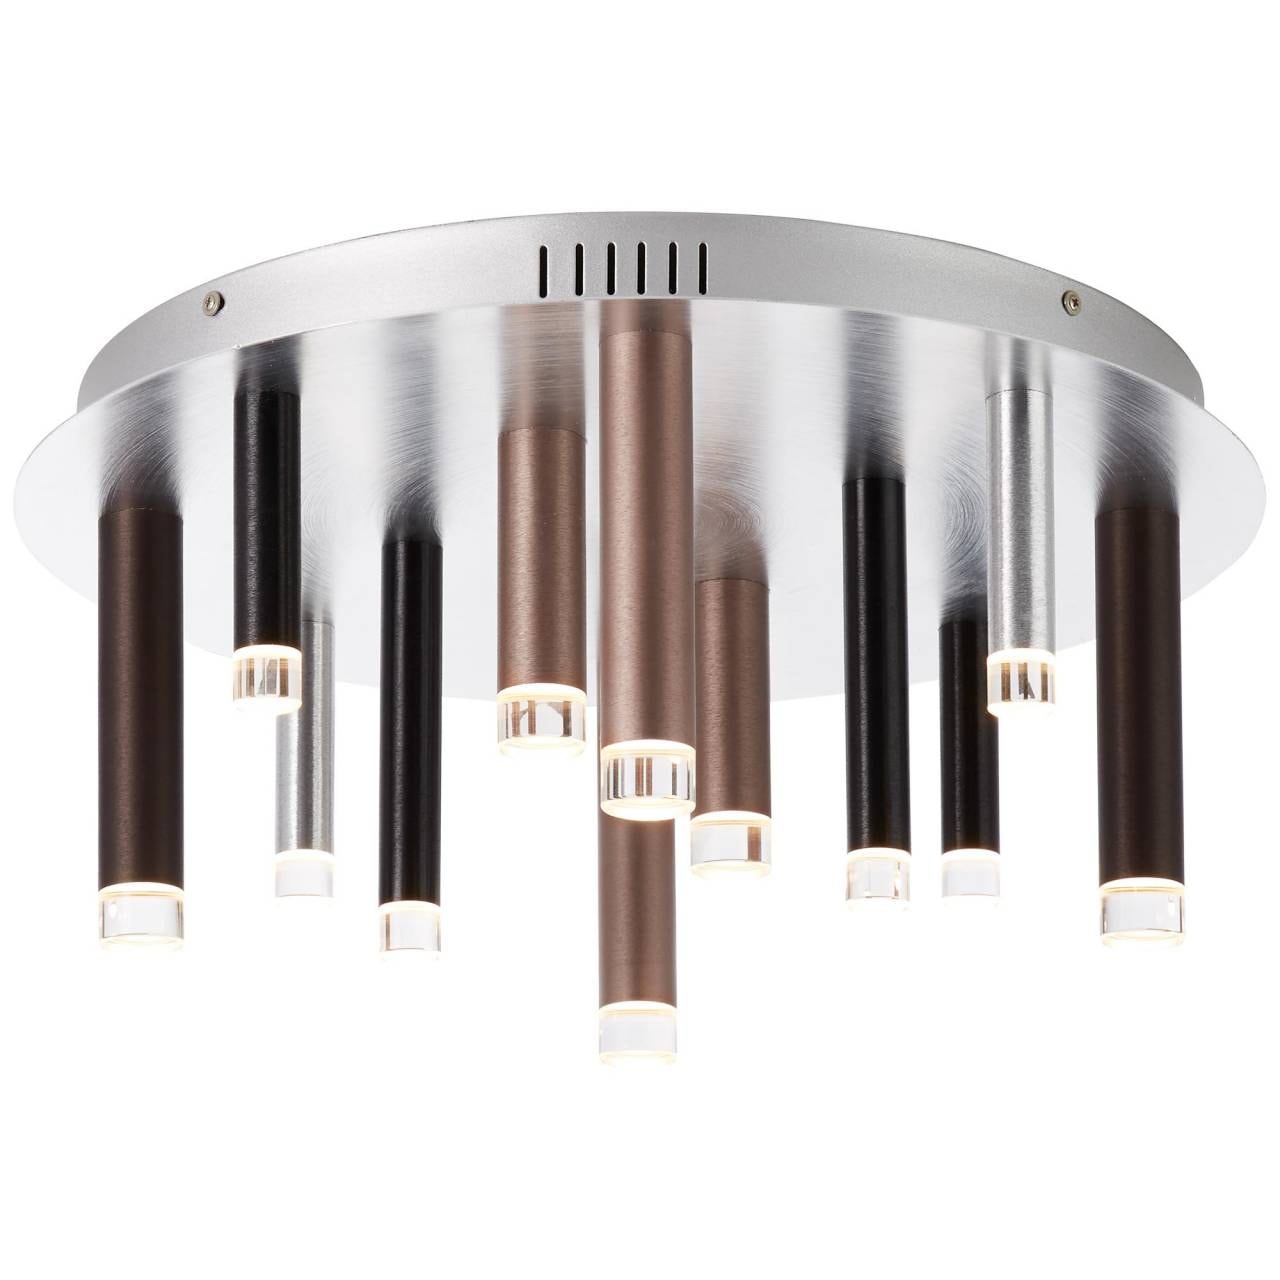 Brilliant LED Deckenleuchte »Cembalo«, 12 flammig-flammig, Ø 51 cm, 3-Stufen dimmbar, 5400lm, warmweiß, Metall, alu/schwarz/braun